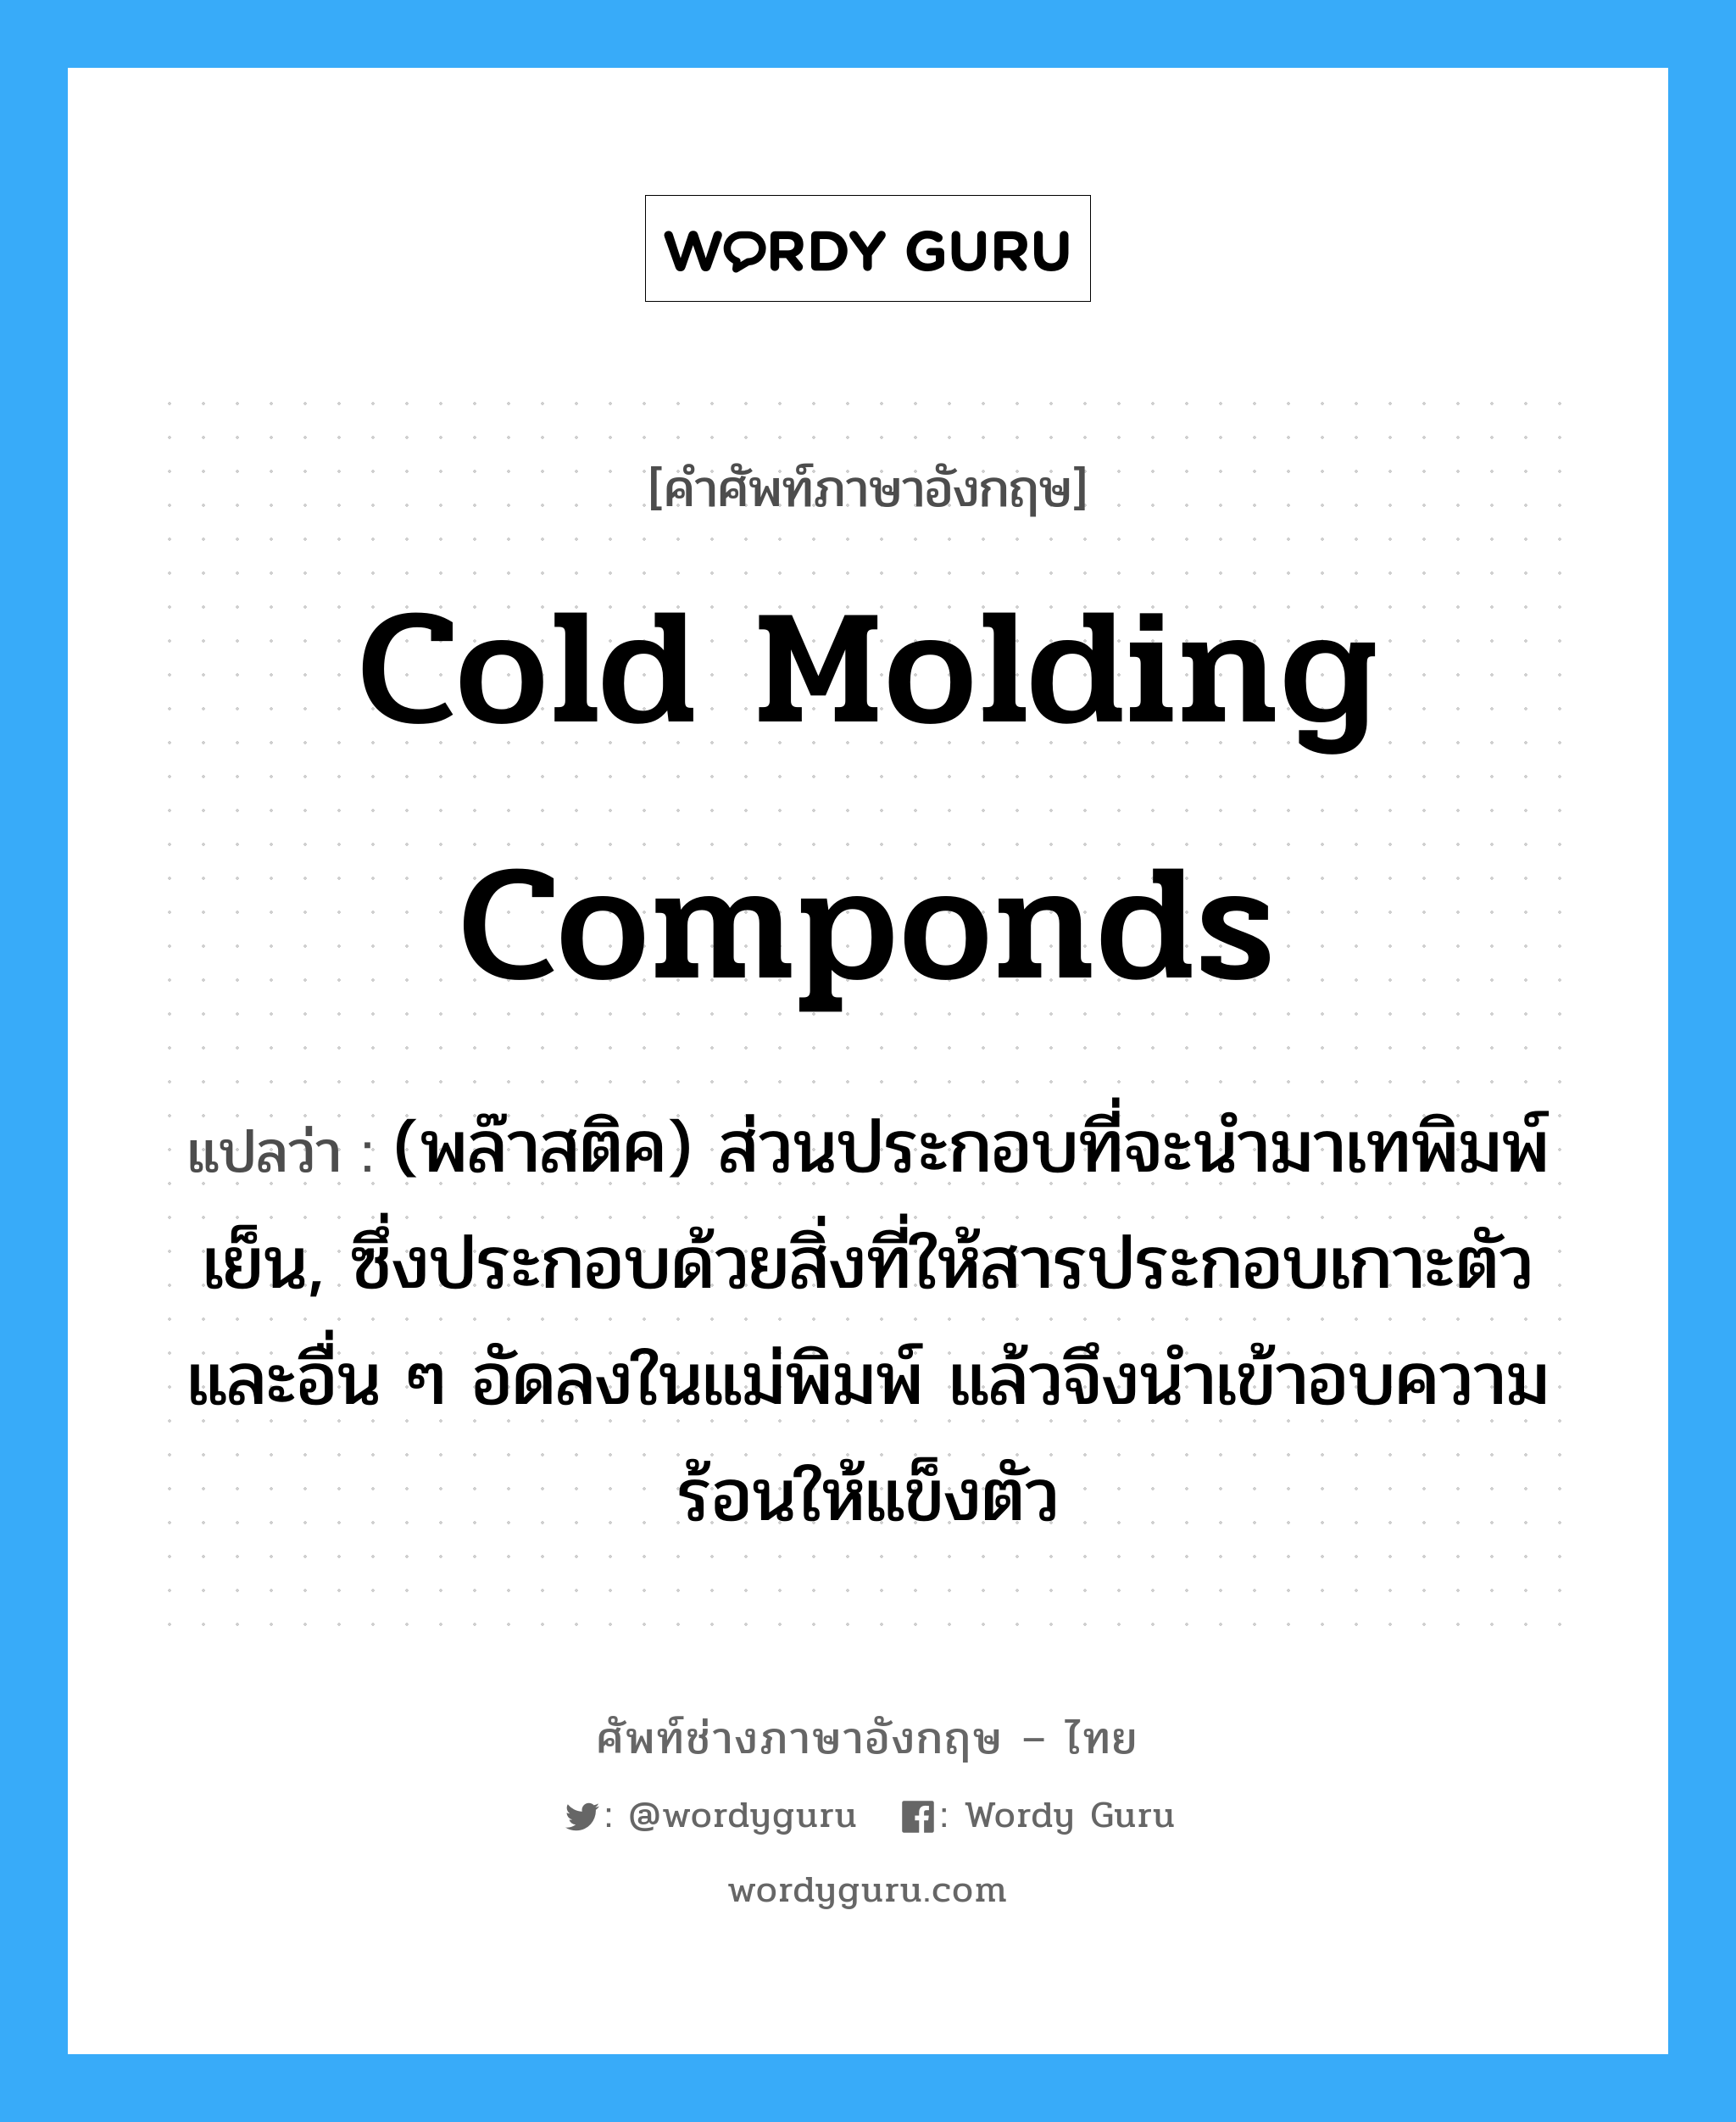 cold molding componds แปลว่า?, คำศัพท์ช่างภาษาอังกฤษ - ไทย cold molding componds คำศัพท์ภาษาอังกฤษ cold molding componds แปลว่า (พล๊าสติค) ส่วนประกอบที่จะนำมาเทพิมพ์เย็น, ซึ่งประกอบด้วยสิ่งที่ให้สารประกอบเกาะตัวและอื่น ๆ อัดลงในแม่พิมพ์ แล้วจึงนำเข้าอบความร้อนให้แข็งตัว